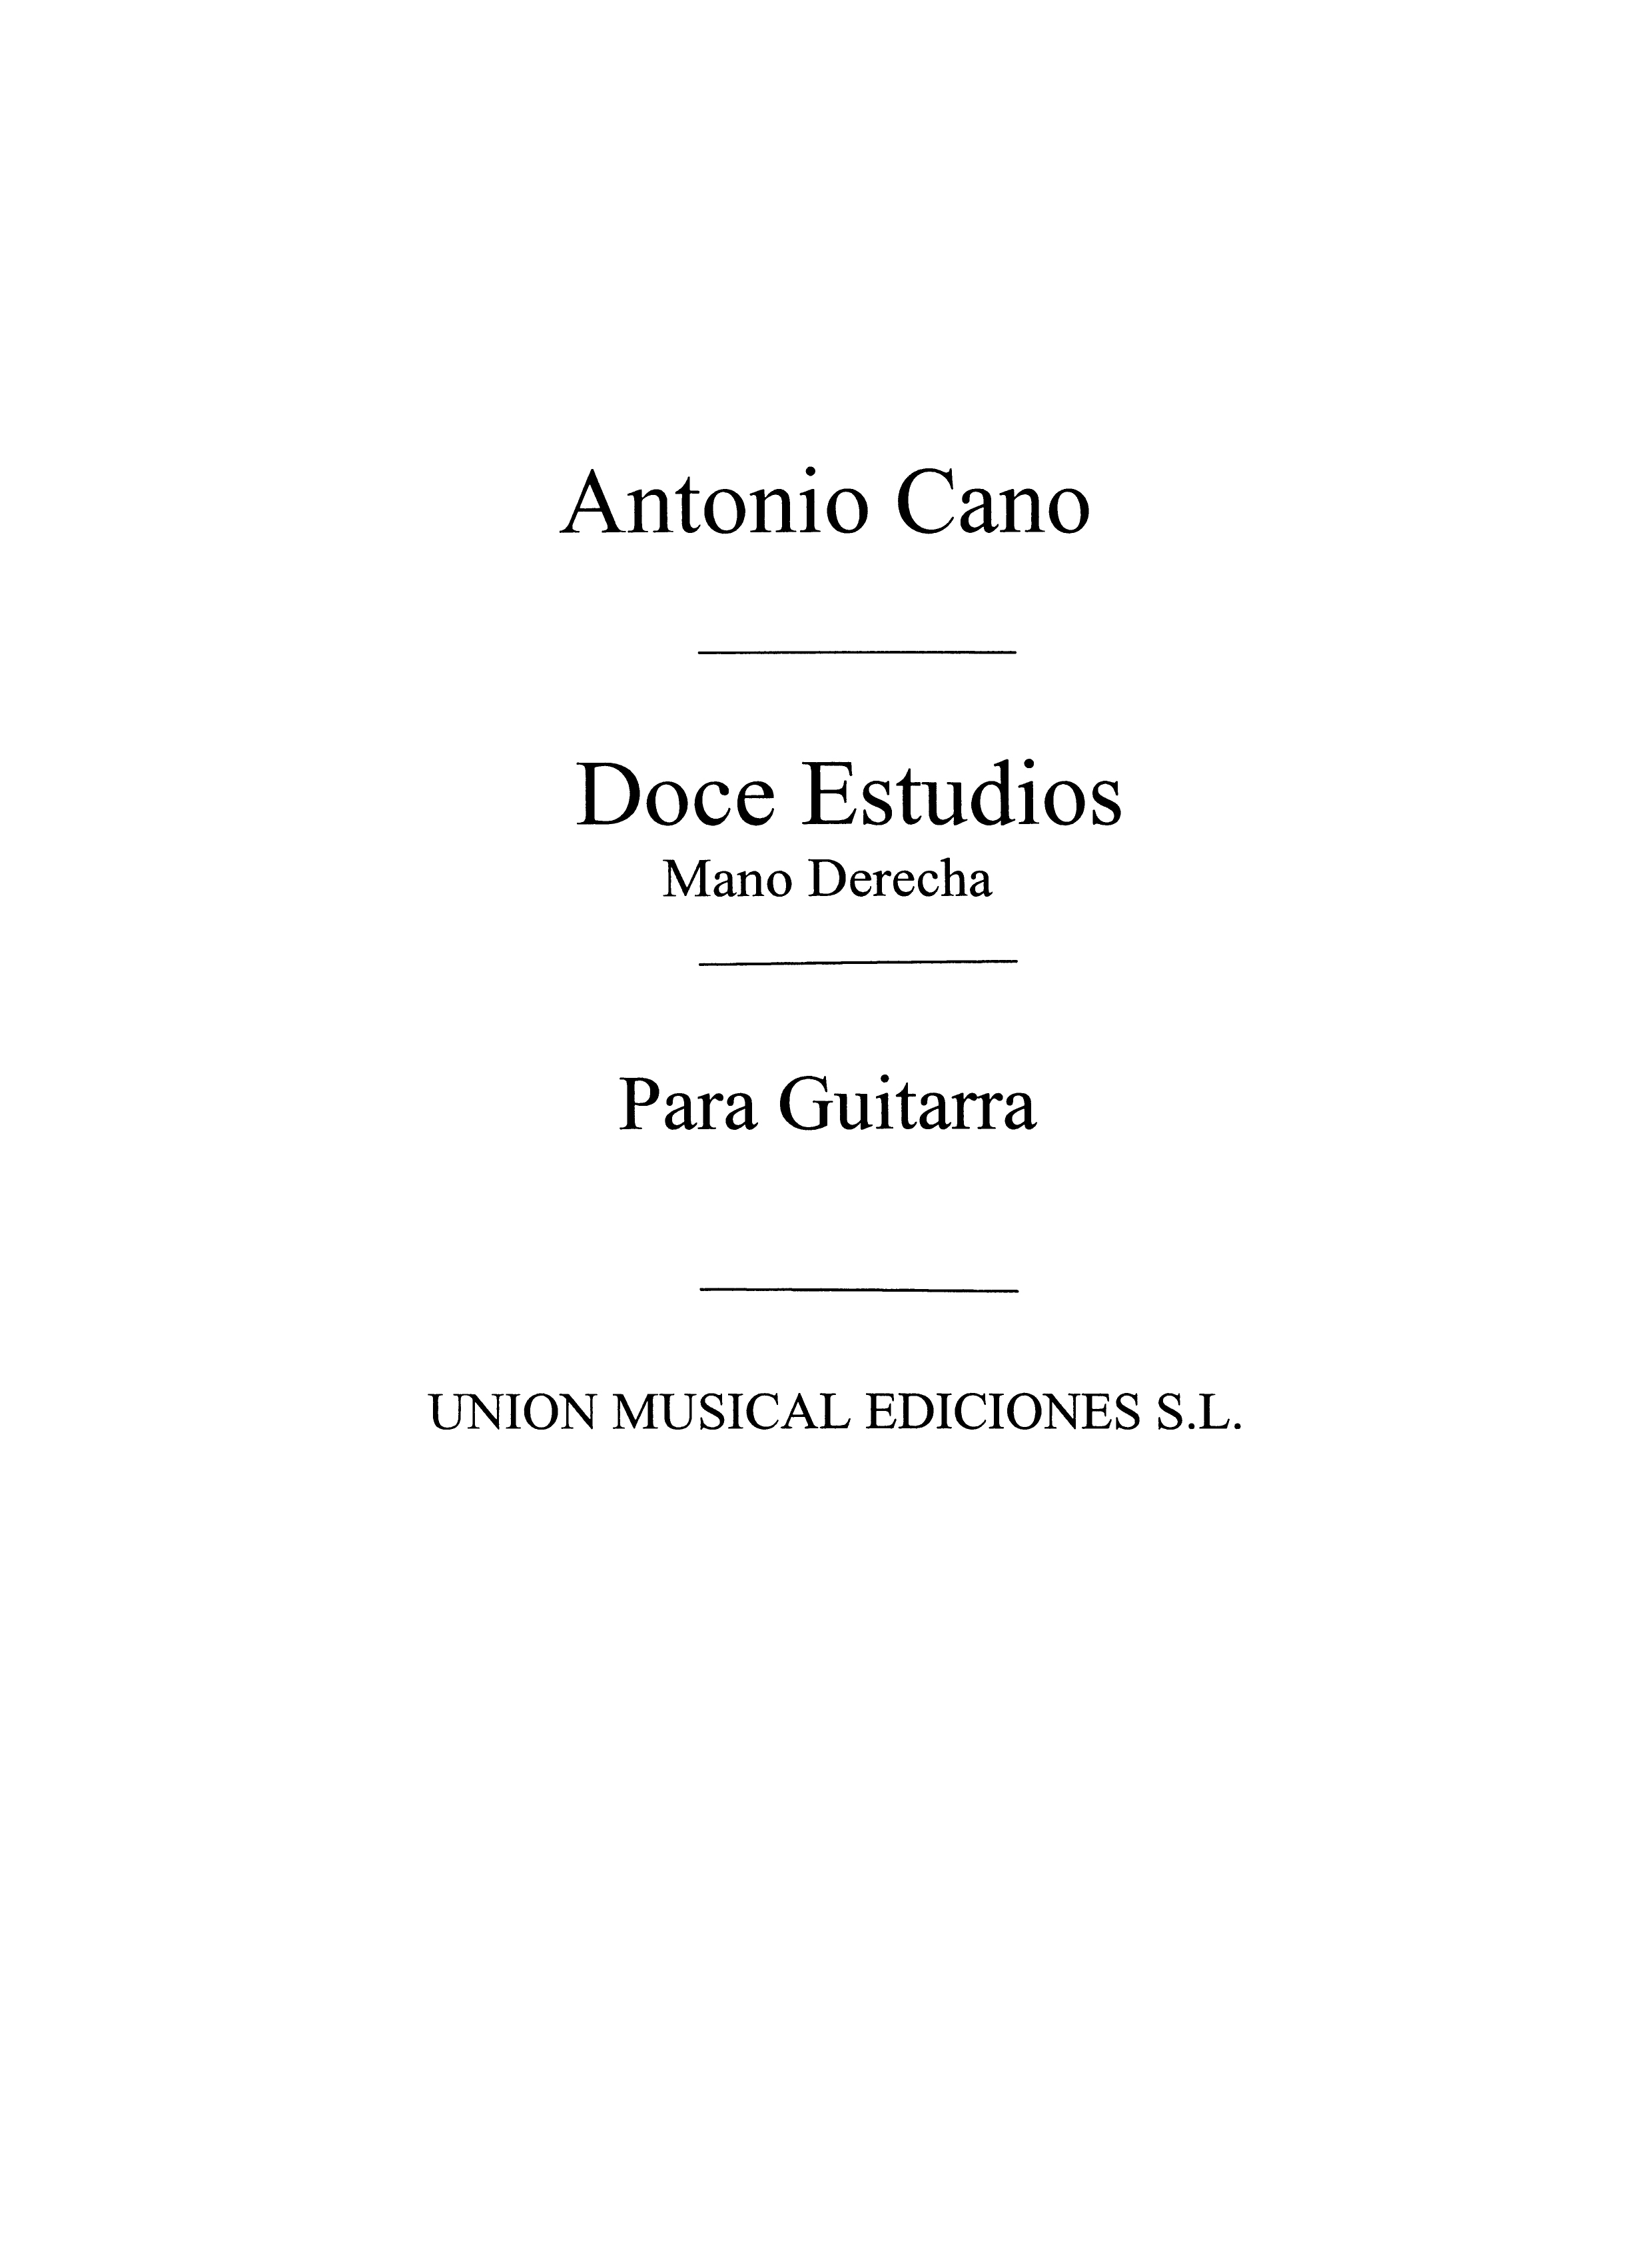 Antonio Cano: Doce Estudios Para Guitarra Mano Derecha: Guitar: Instrumental